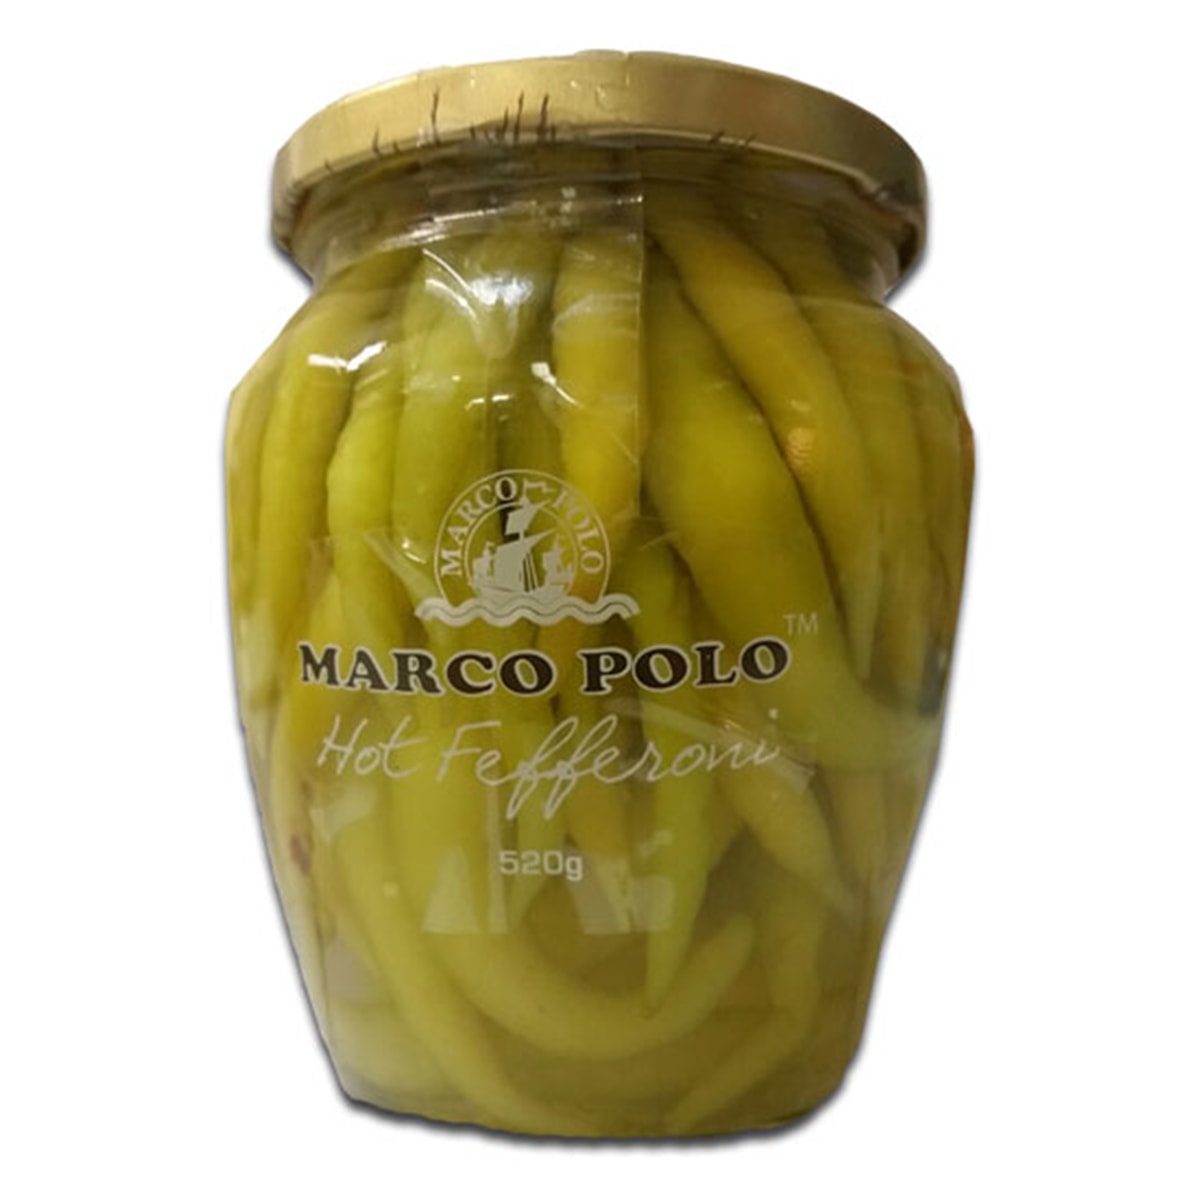 Buy Marco Polo Hot Fefferoni (Yellow Fefferoni Peppers) - 480 gm